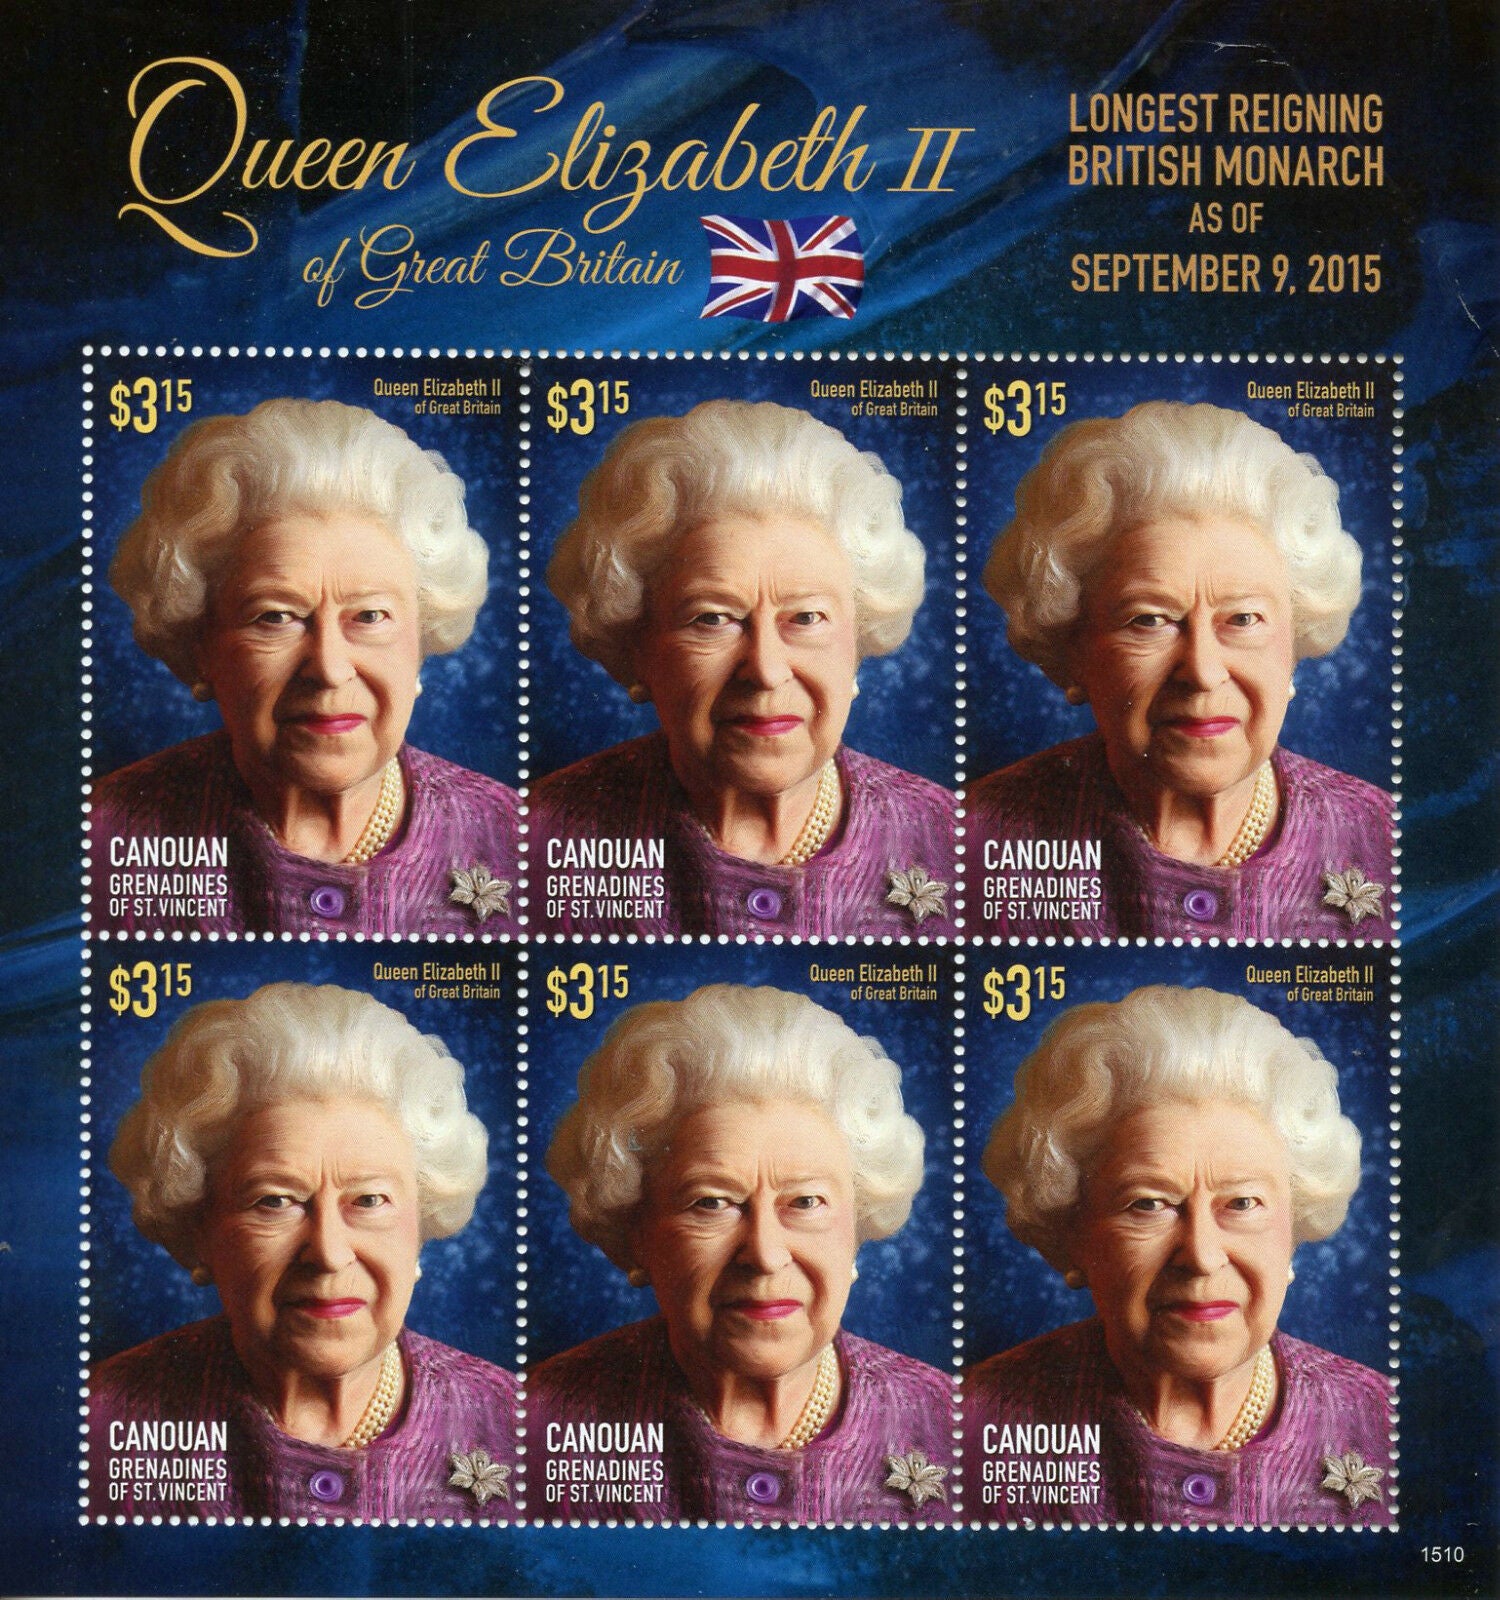 Canouan Gren St Vincent Stamps 2015 MNH Queen Elizabeth II Longest Reign 6v MS I